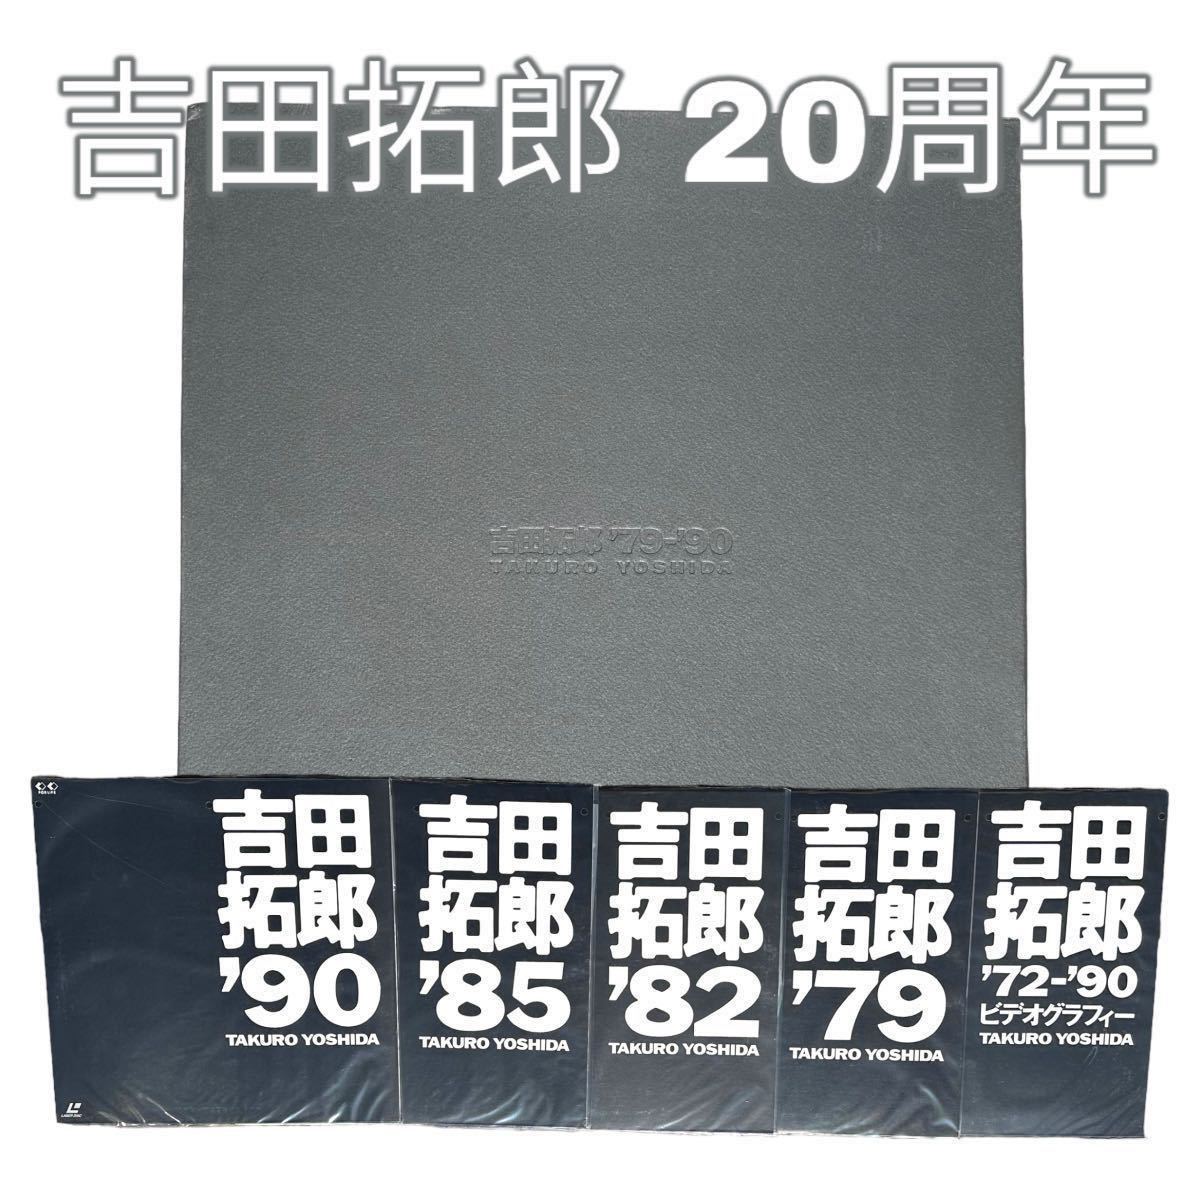 吉田拓郎 20周年 特別限定 LD レーザーディスク5枚組 Laser Disc 1979_1990年 ミュージック_画像1